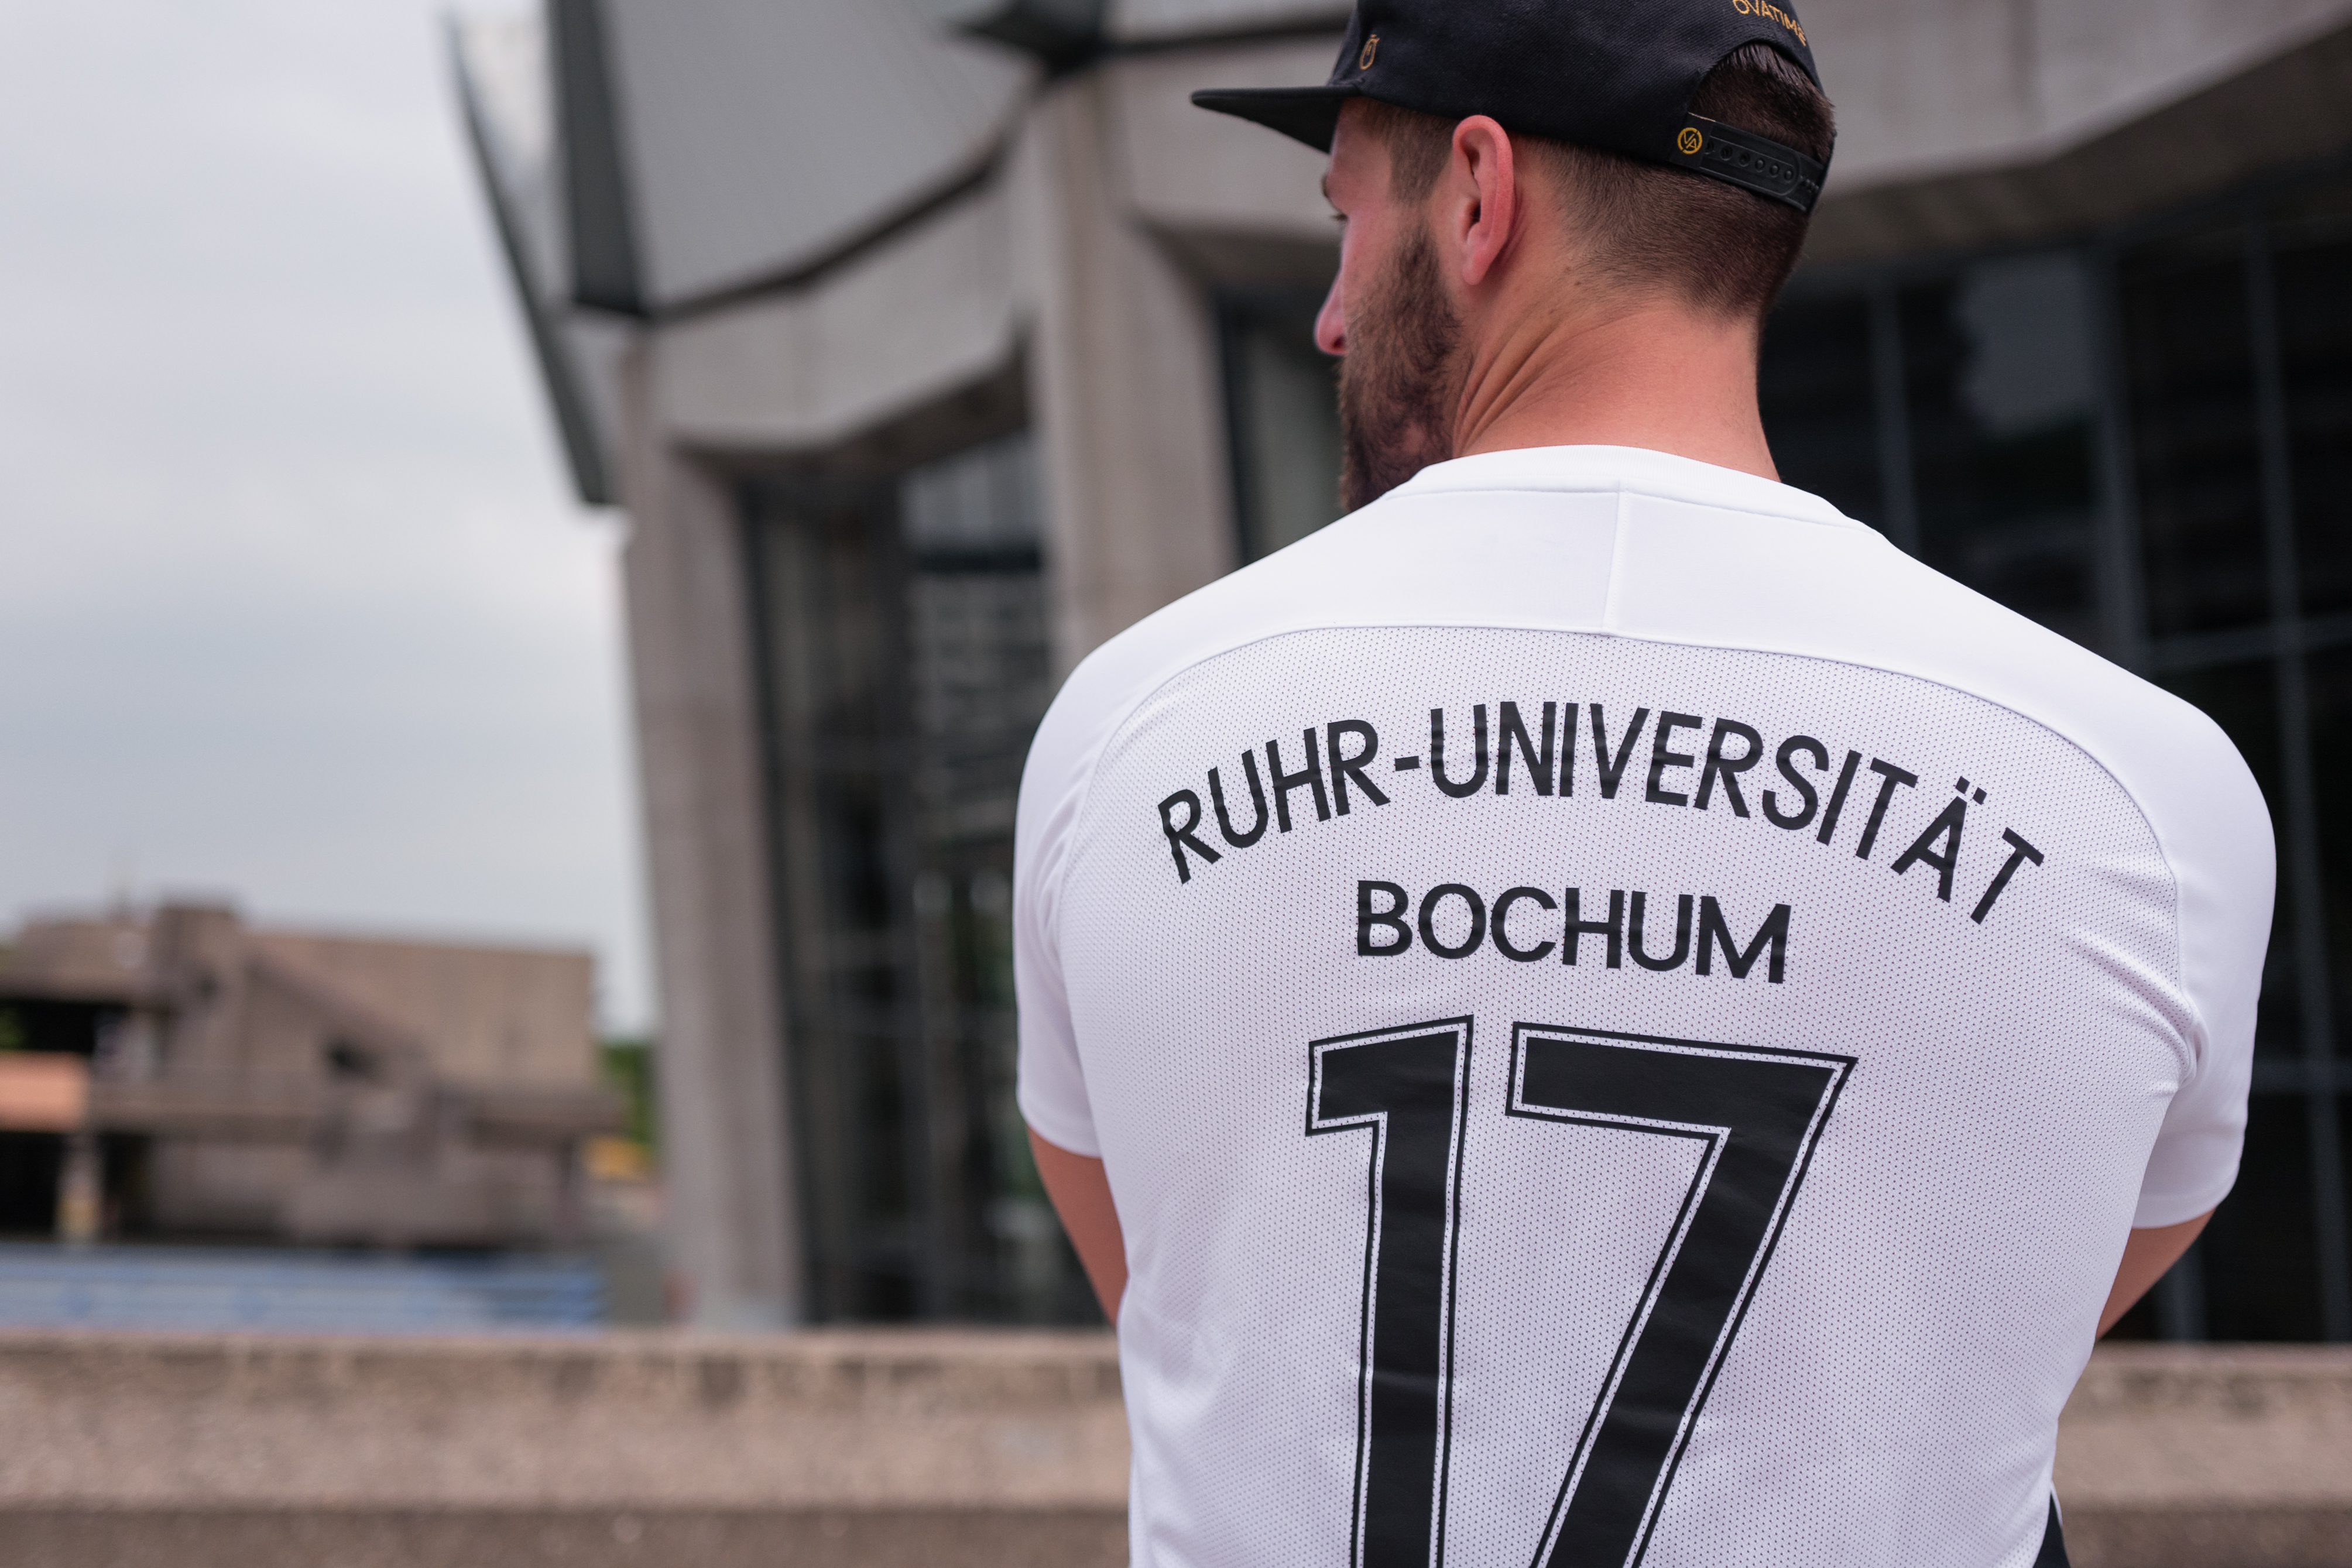 Trikot mit der Aufschrift Ruhr-Universität Bochum